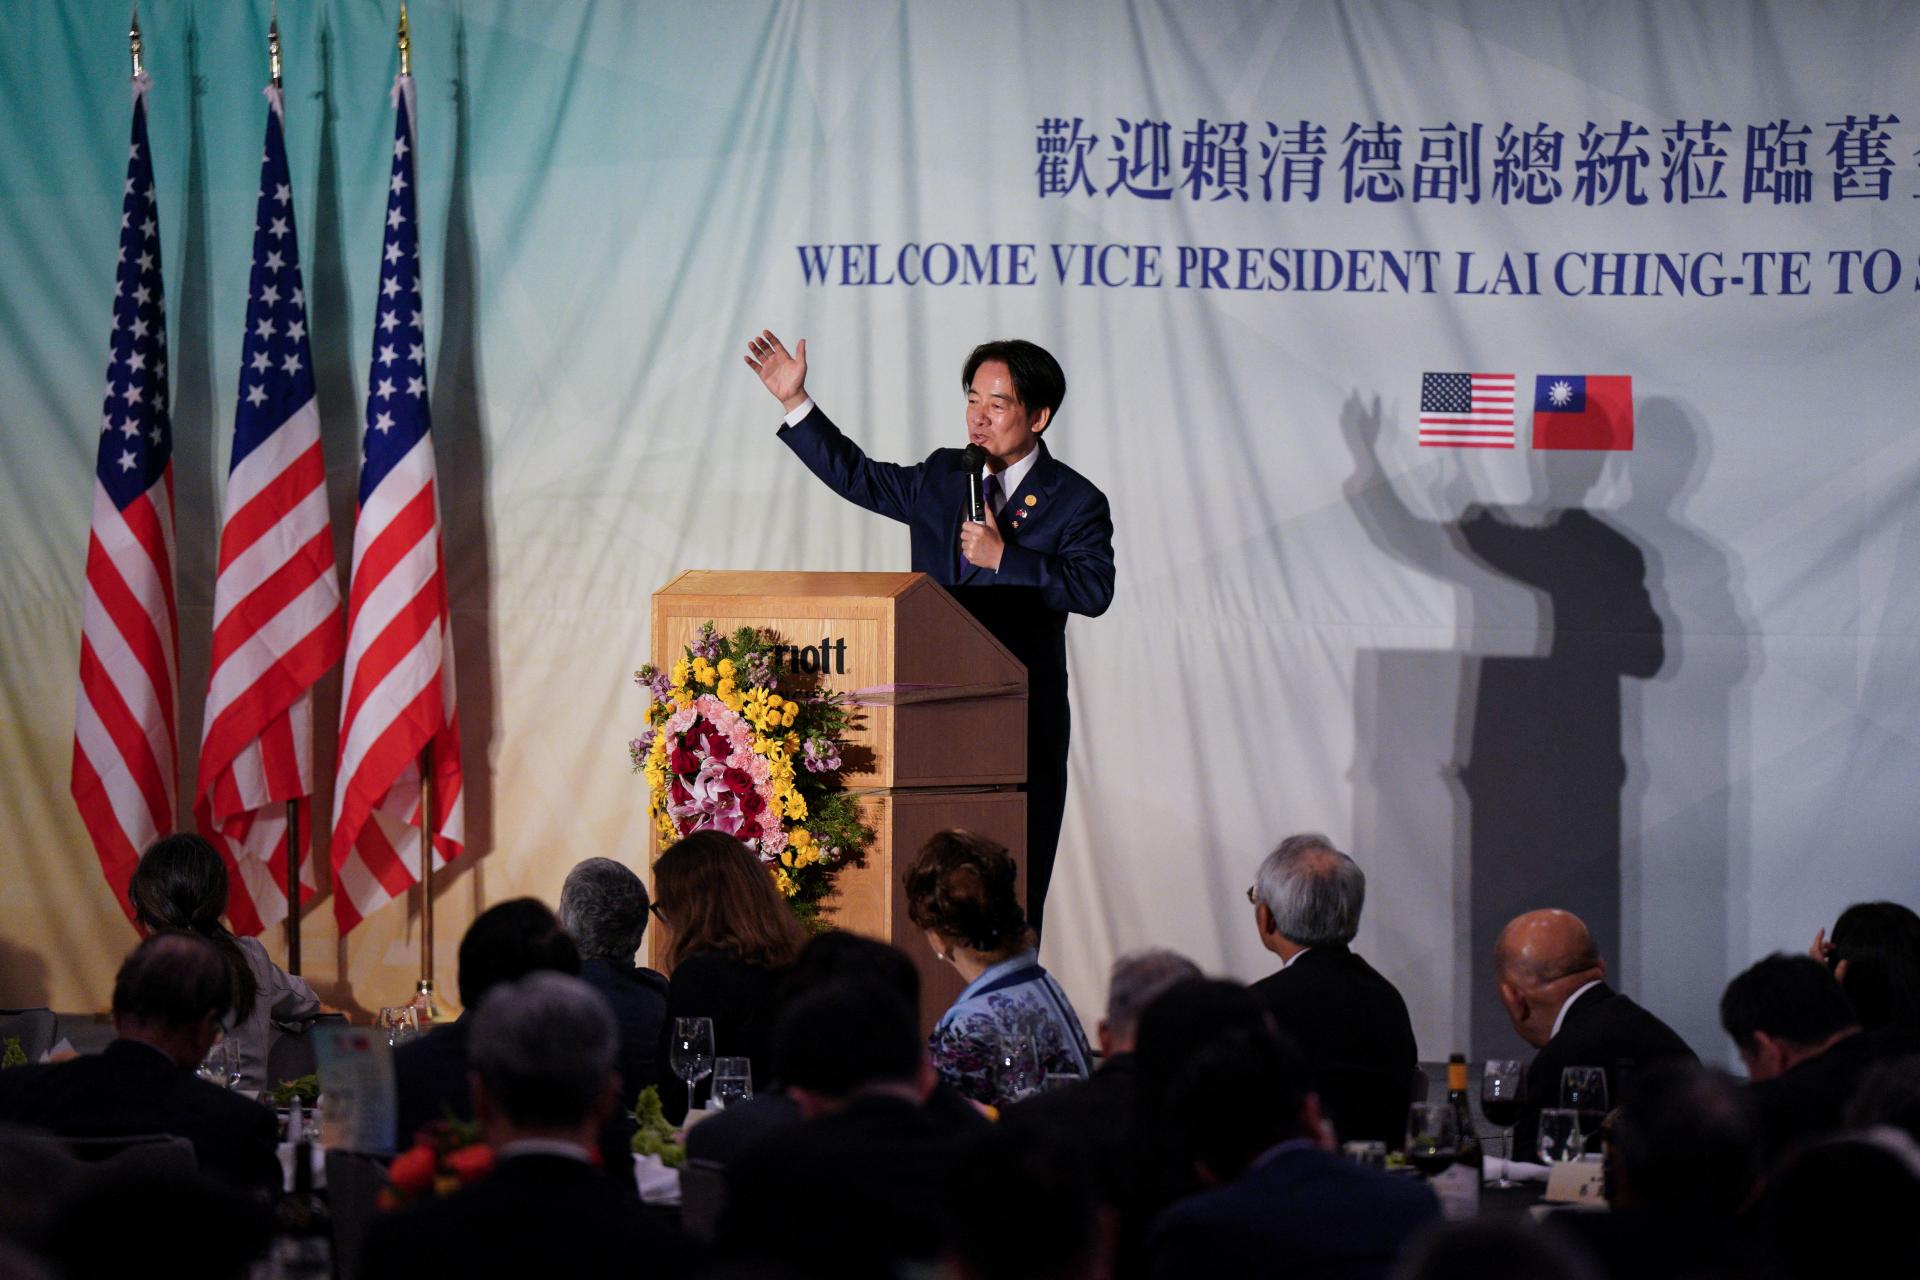 Zatiaľ čo taiwanský viceprezident navštevoval Spojené štáty, Čína začala s cvičnými manévrami pri Taiwane